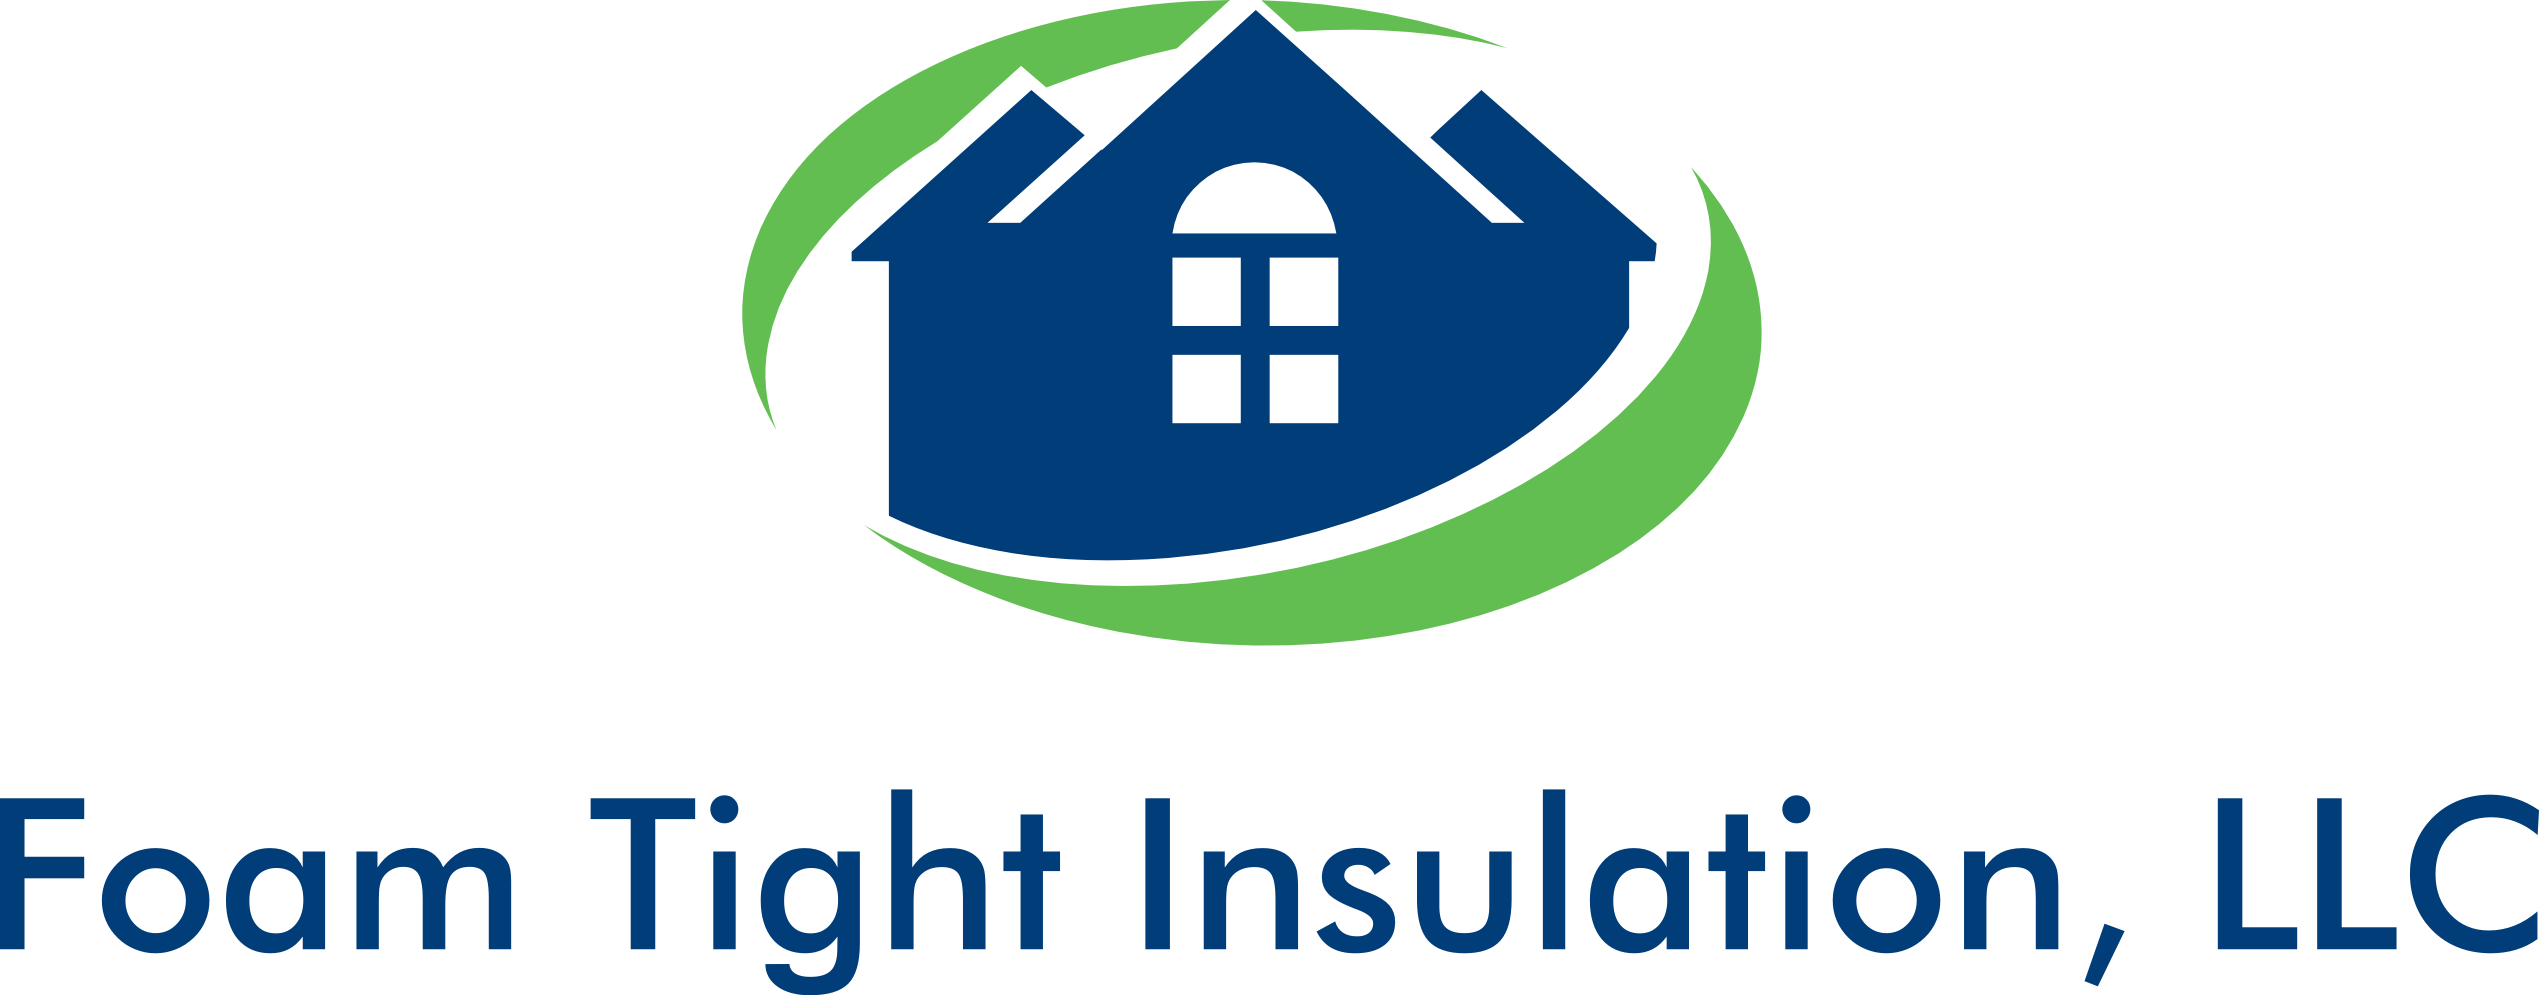 Foam Tight Insulation, LLC Logo